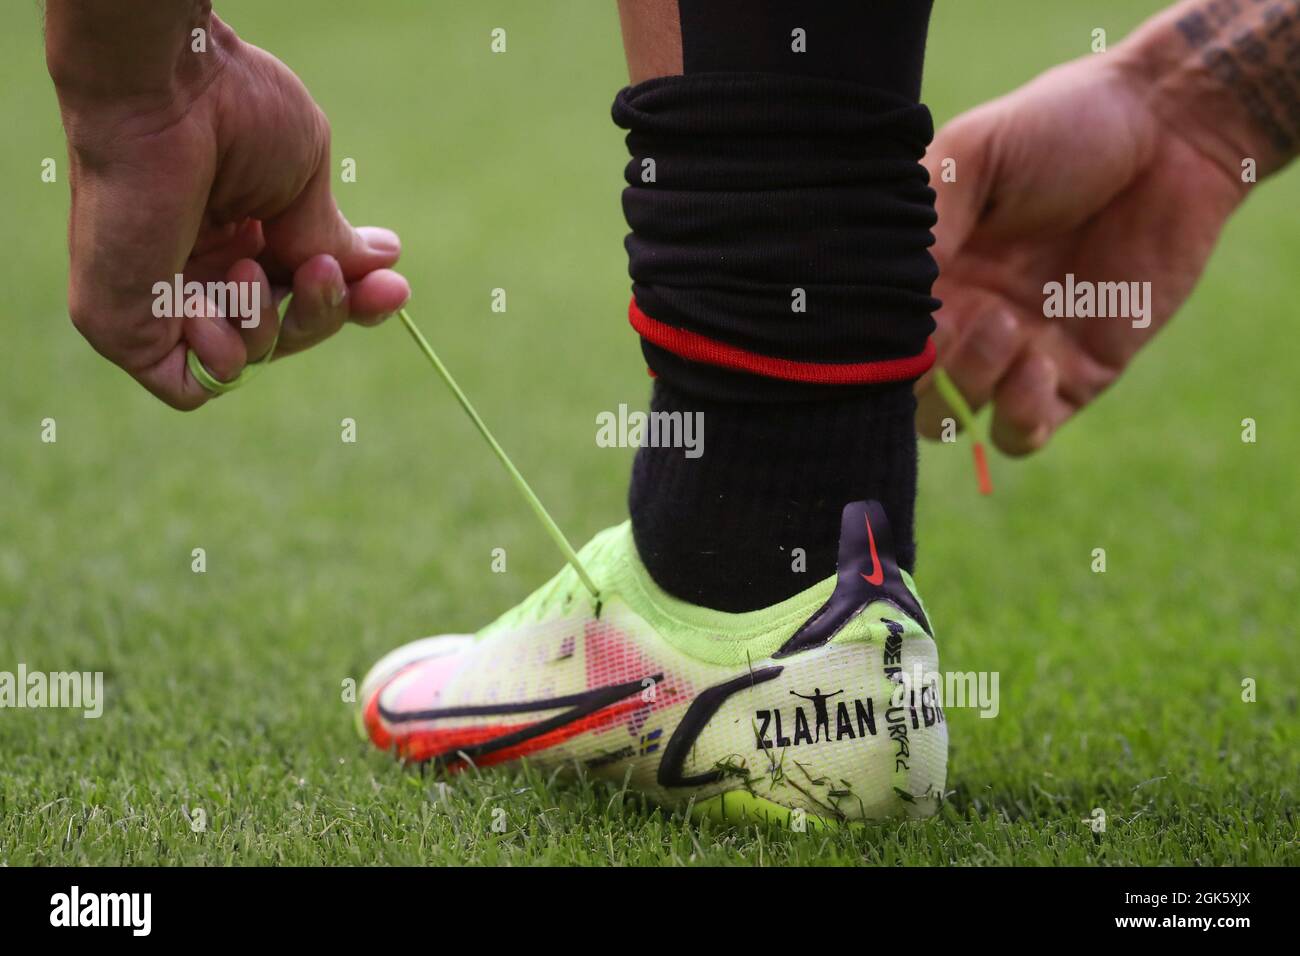 Mailand, Italien, 12. September 2021. Zlatan Ibrahimovic von AC Milan führt  seine personalisierten Nike Mercurial Fußballschuhe während des  Aufwärmvorgangs vor dem Spiel der Serie A bei Giuseppe Meazza, Mailand,  ein. Bildnachweis sollte